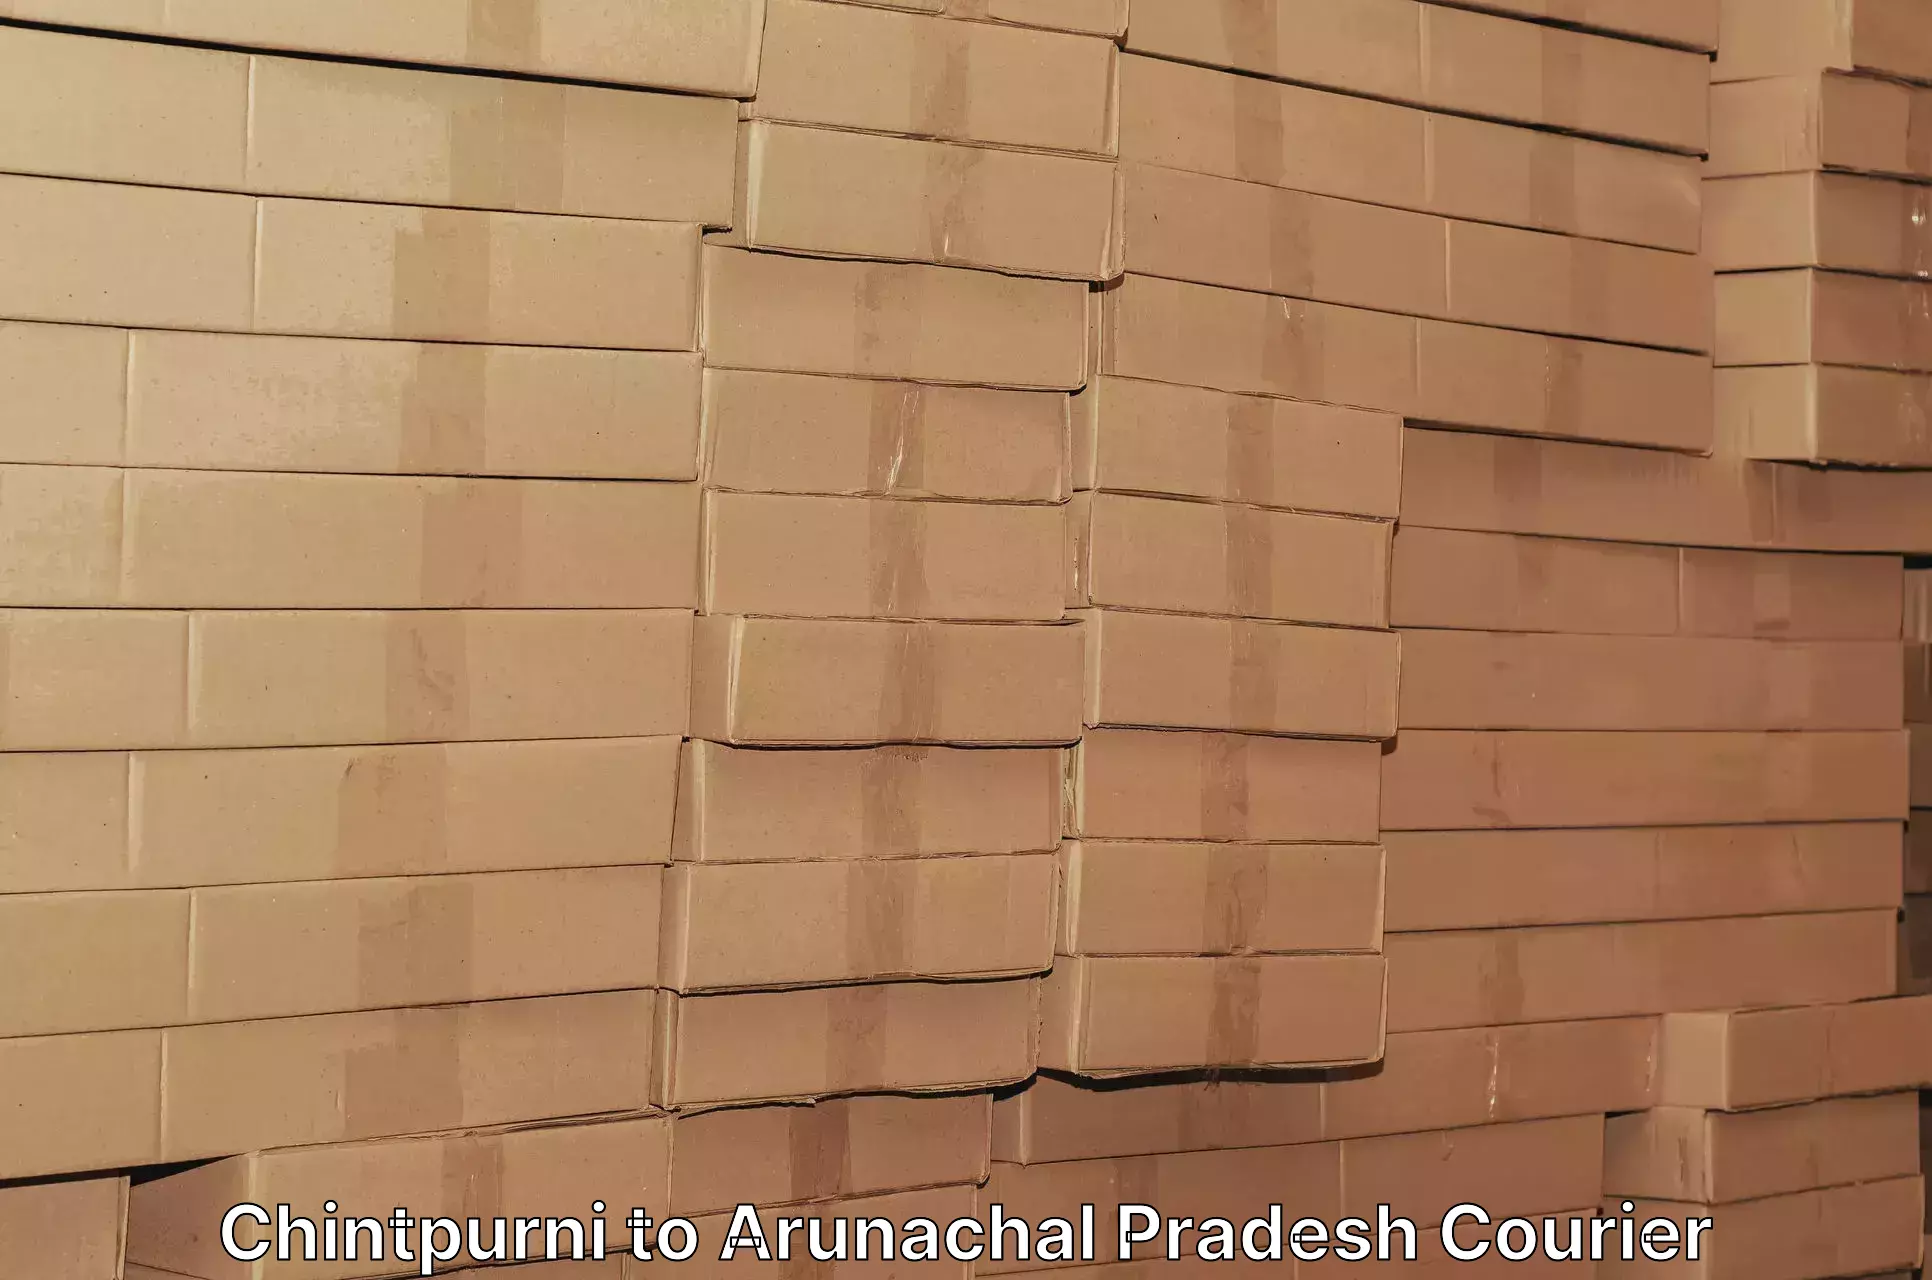 Advanced courier platforms Chintpurni to Arunachal Pradesh